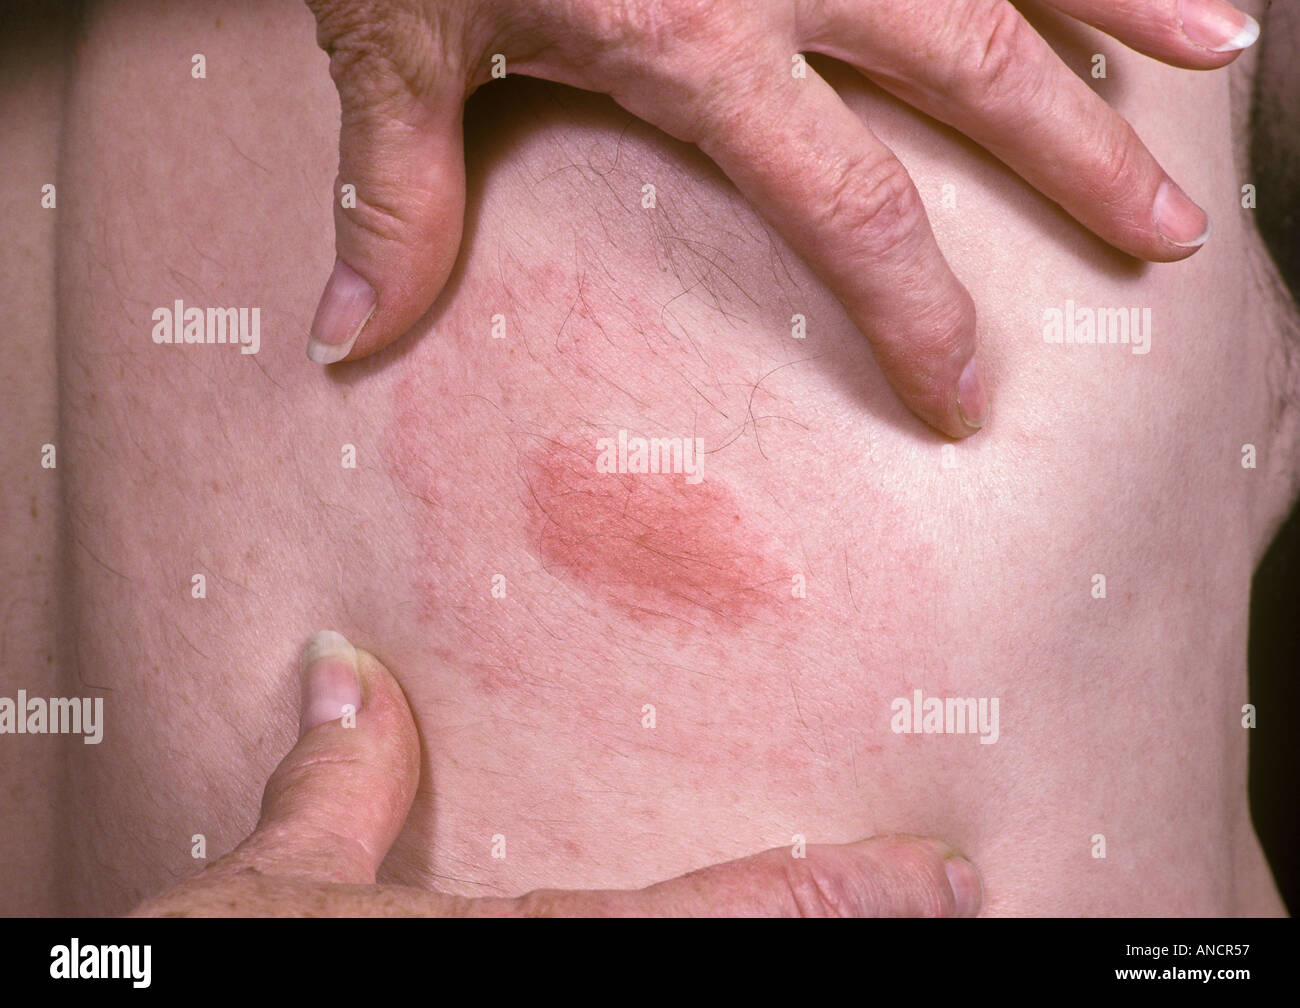 Target Rash From Deer Tick Bite Transmitting Lymes Disease Stock Photo Alamy